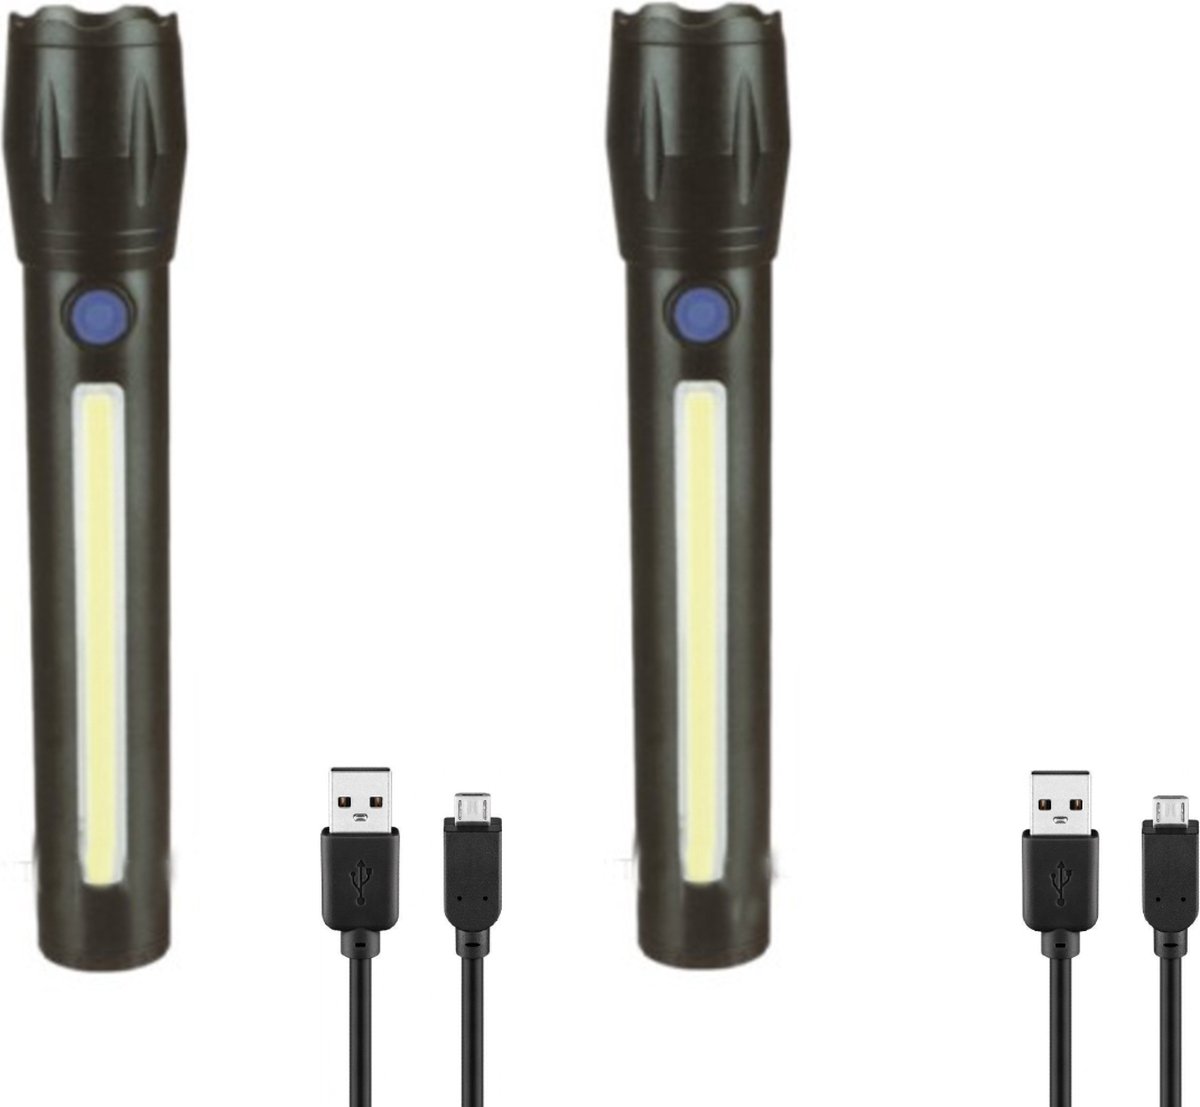 2 Stuks - Zaklamp oplaadbaar - Inclusief kabel en batterij - met Zoomfunctie - 1500 Lumen - 166 MM lang - 1200 mAh - Zoomfunctie X2000